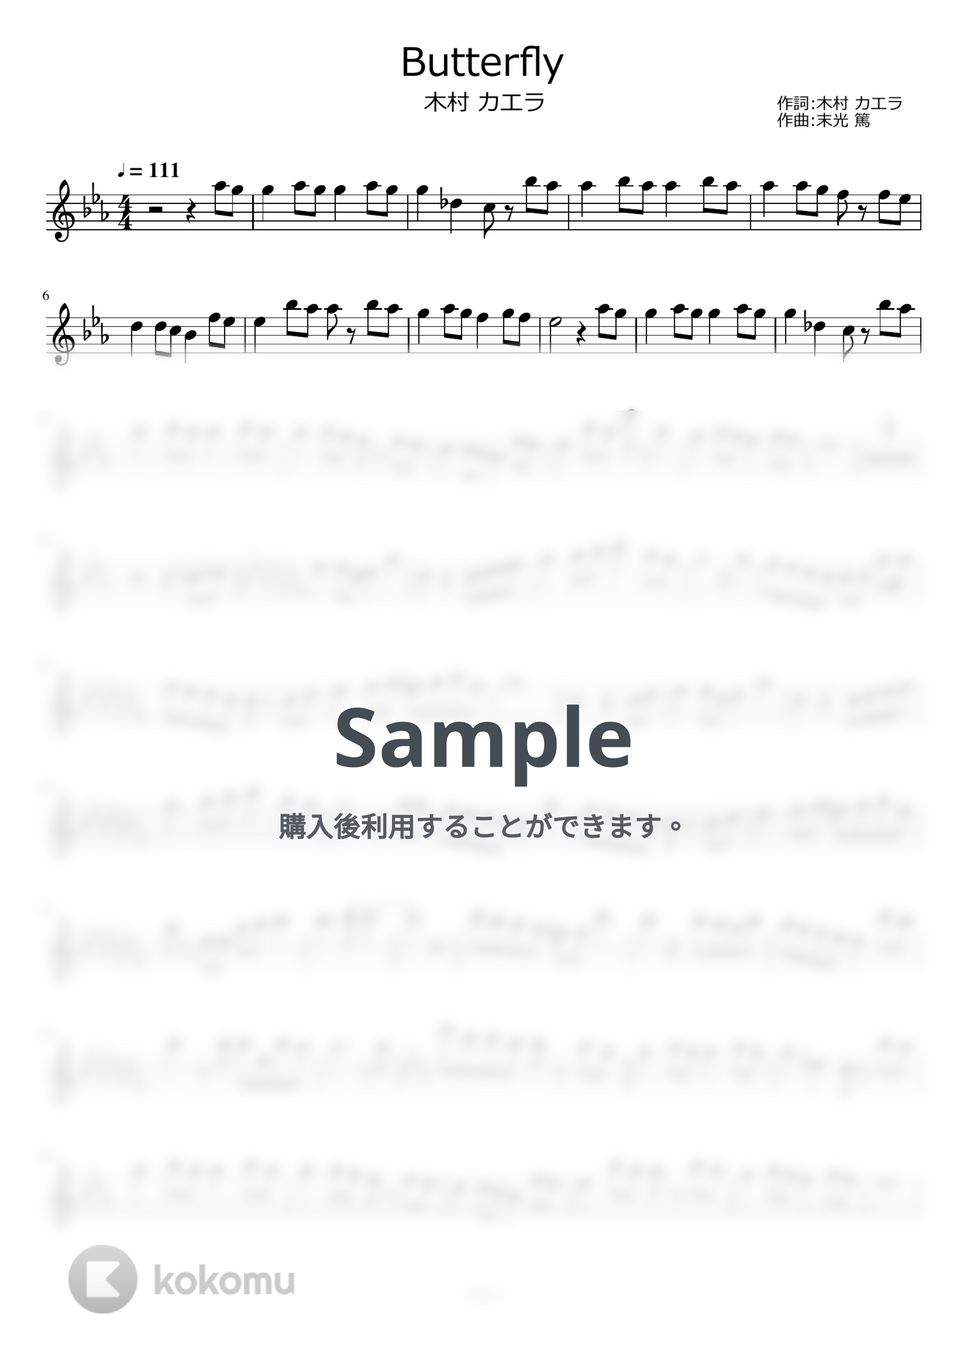 木村カエラ - Butterfly by ayako music school